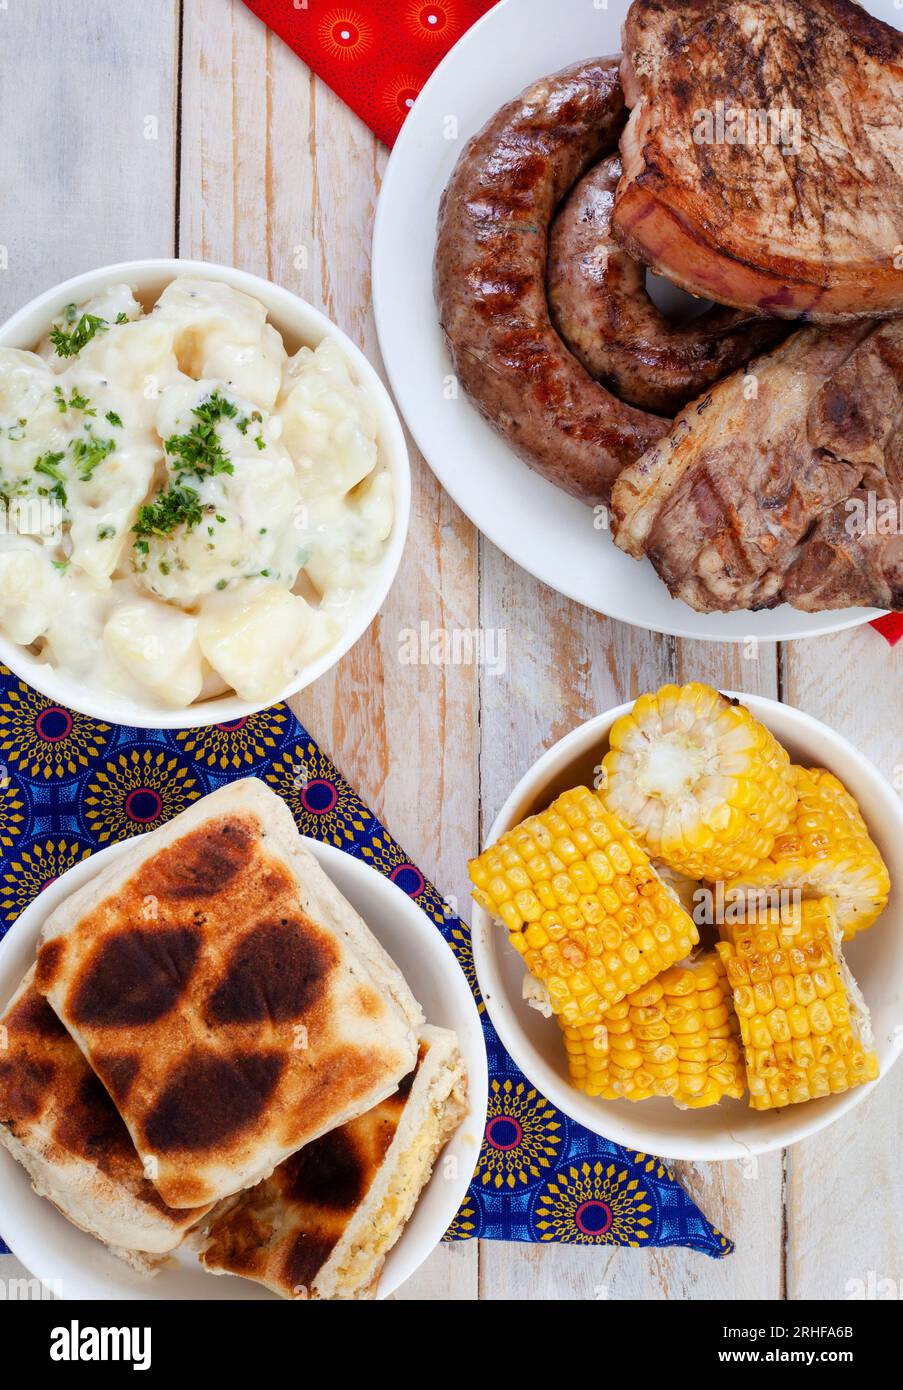 Südafrikanischer Braai-Tag oder Heritage Day. Traditionelles Braai-Essen wird gefeiert. Fleisch und Beilagen mit traditionellem Shwe - Shwe Tuch. Stockfoto